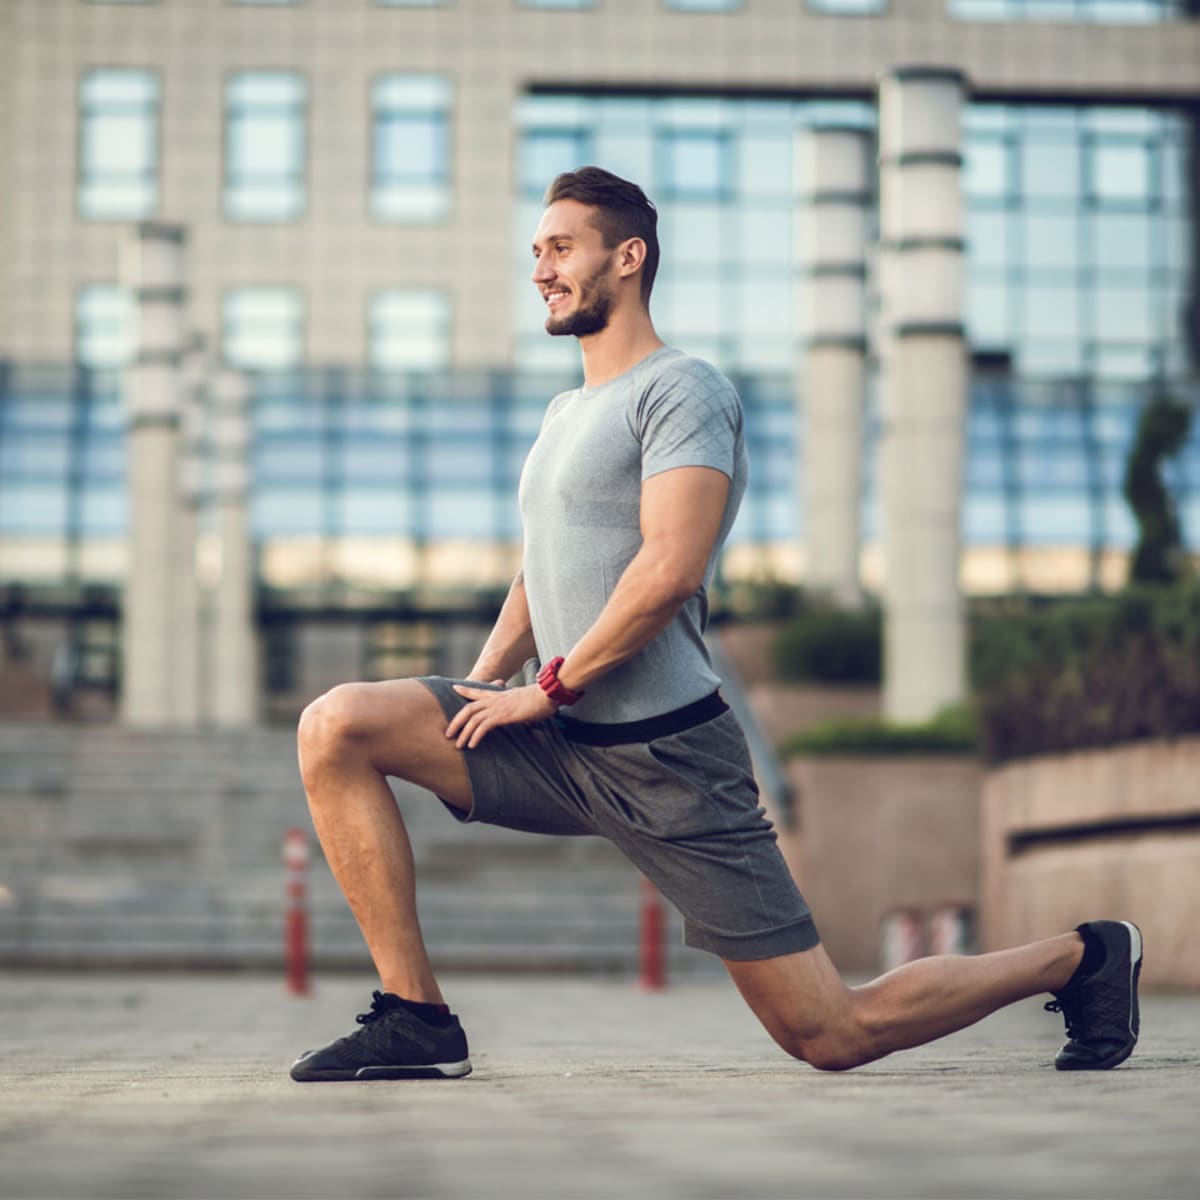 10 Best Beginner Leg Workout Exercises for Men